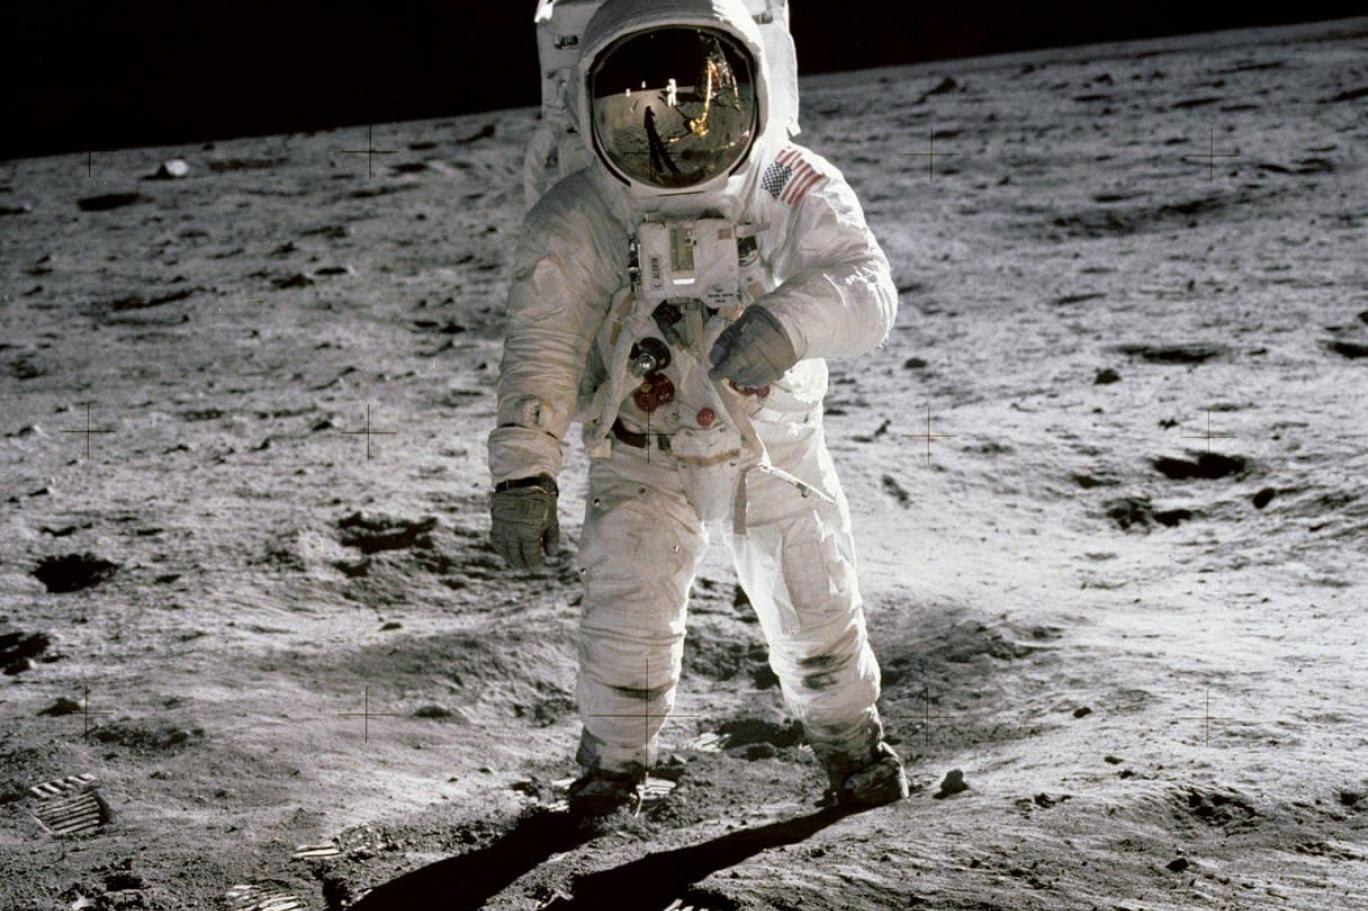 İnsanlık olarak 20 Temmuz 1969 yılında NASA'nın Apollo görevi kapsamında ilk kez Ay'a ayak bastık. Bu süreçte farklı uzay görevleri yapıldı ve toplamda 24 astronottan 12'si Ay yüzeyine ayak bastı.

Apollo görevi sırasında astronotların Ay yüzeyinde bulunduğu ve daha önce hiç yayınlanmamış olan fotoğraflar açık artırmaya çıkarılıyor.  Los Angeles Modern Müzayede ve Wright müzayede evi, Apollo görevlerinin 50. yıl dönümüne özel daha önce yayınlanmayan fotoğrafları açık artırma ile satacak.

Fotoğraflar sadece Apollo görevi değil, diğer görevlerden fotoğrafları da içeriyor.

Açık artırmada toplamda 300 fotoğraf satışa çıkacak. Neil Armstrong’un Ay yüzeyindeki tek fotoğrafı da büyütülmüş ve netleştiriliş olarak 30 bin ila 50 bin dolar tahmini değerle satılacak.

İşte ilk kez gördüğümüz ve açık artırmaya çıkarılacak fotoğraflar: